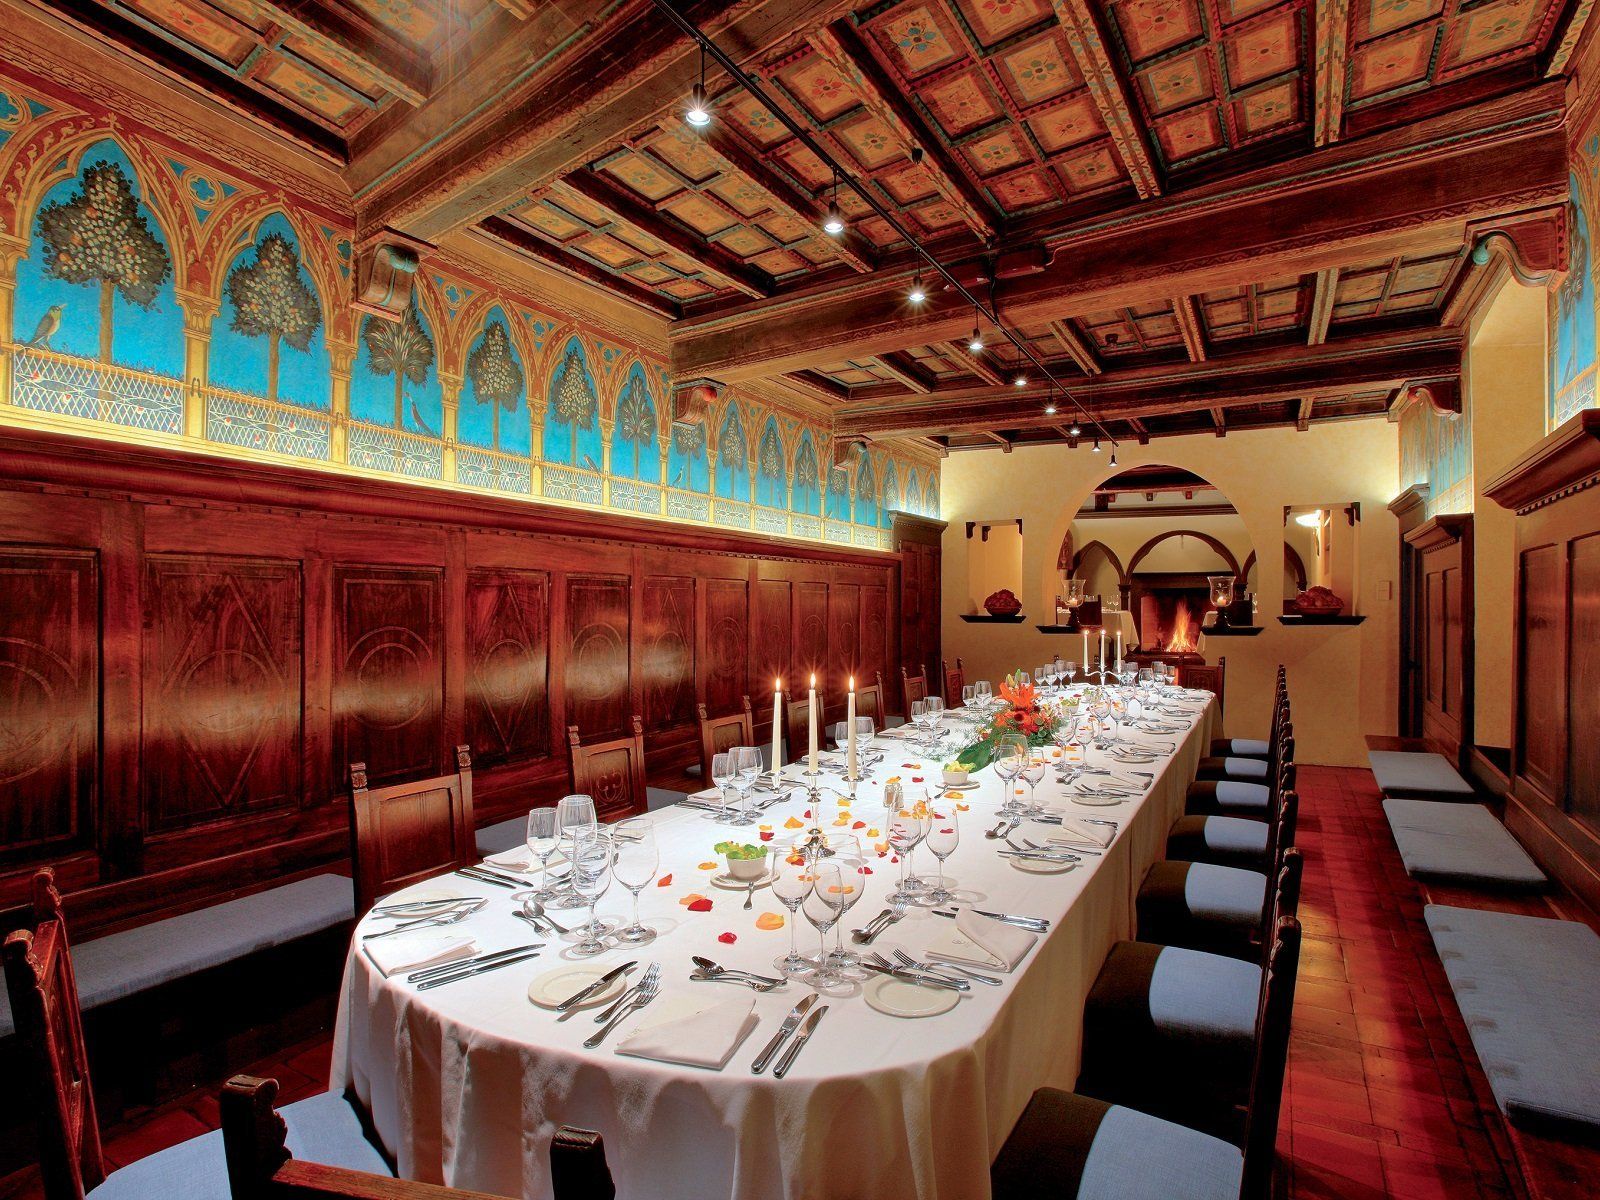 Das berühmte Cenacolo Fiorentino, mit ovalem Tisch für 10-24 Gäste